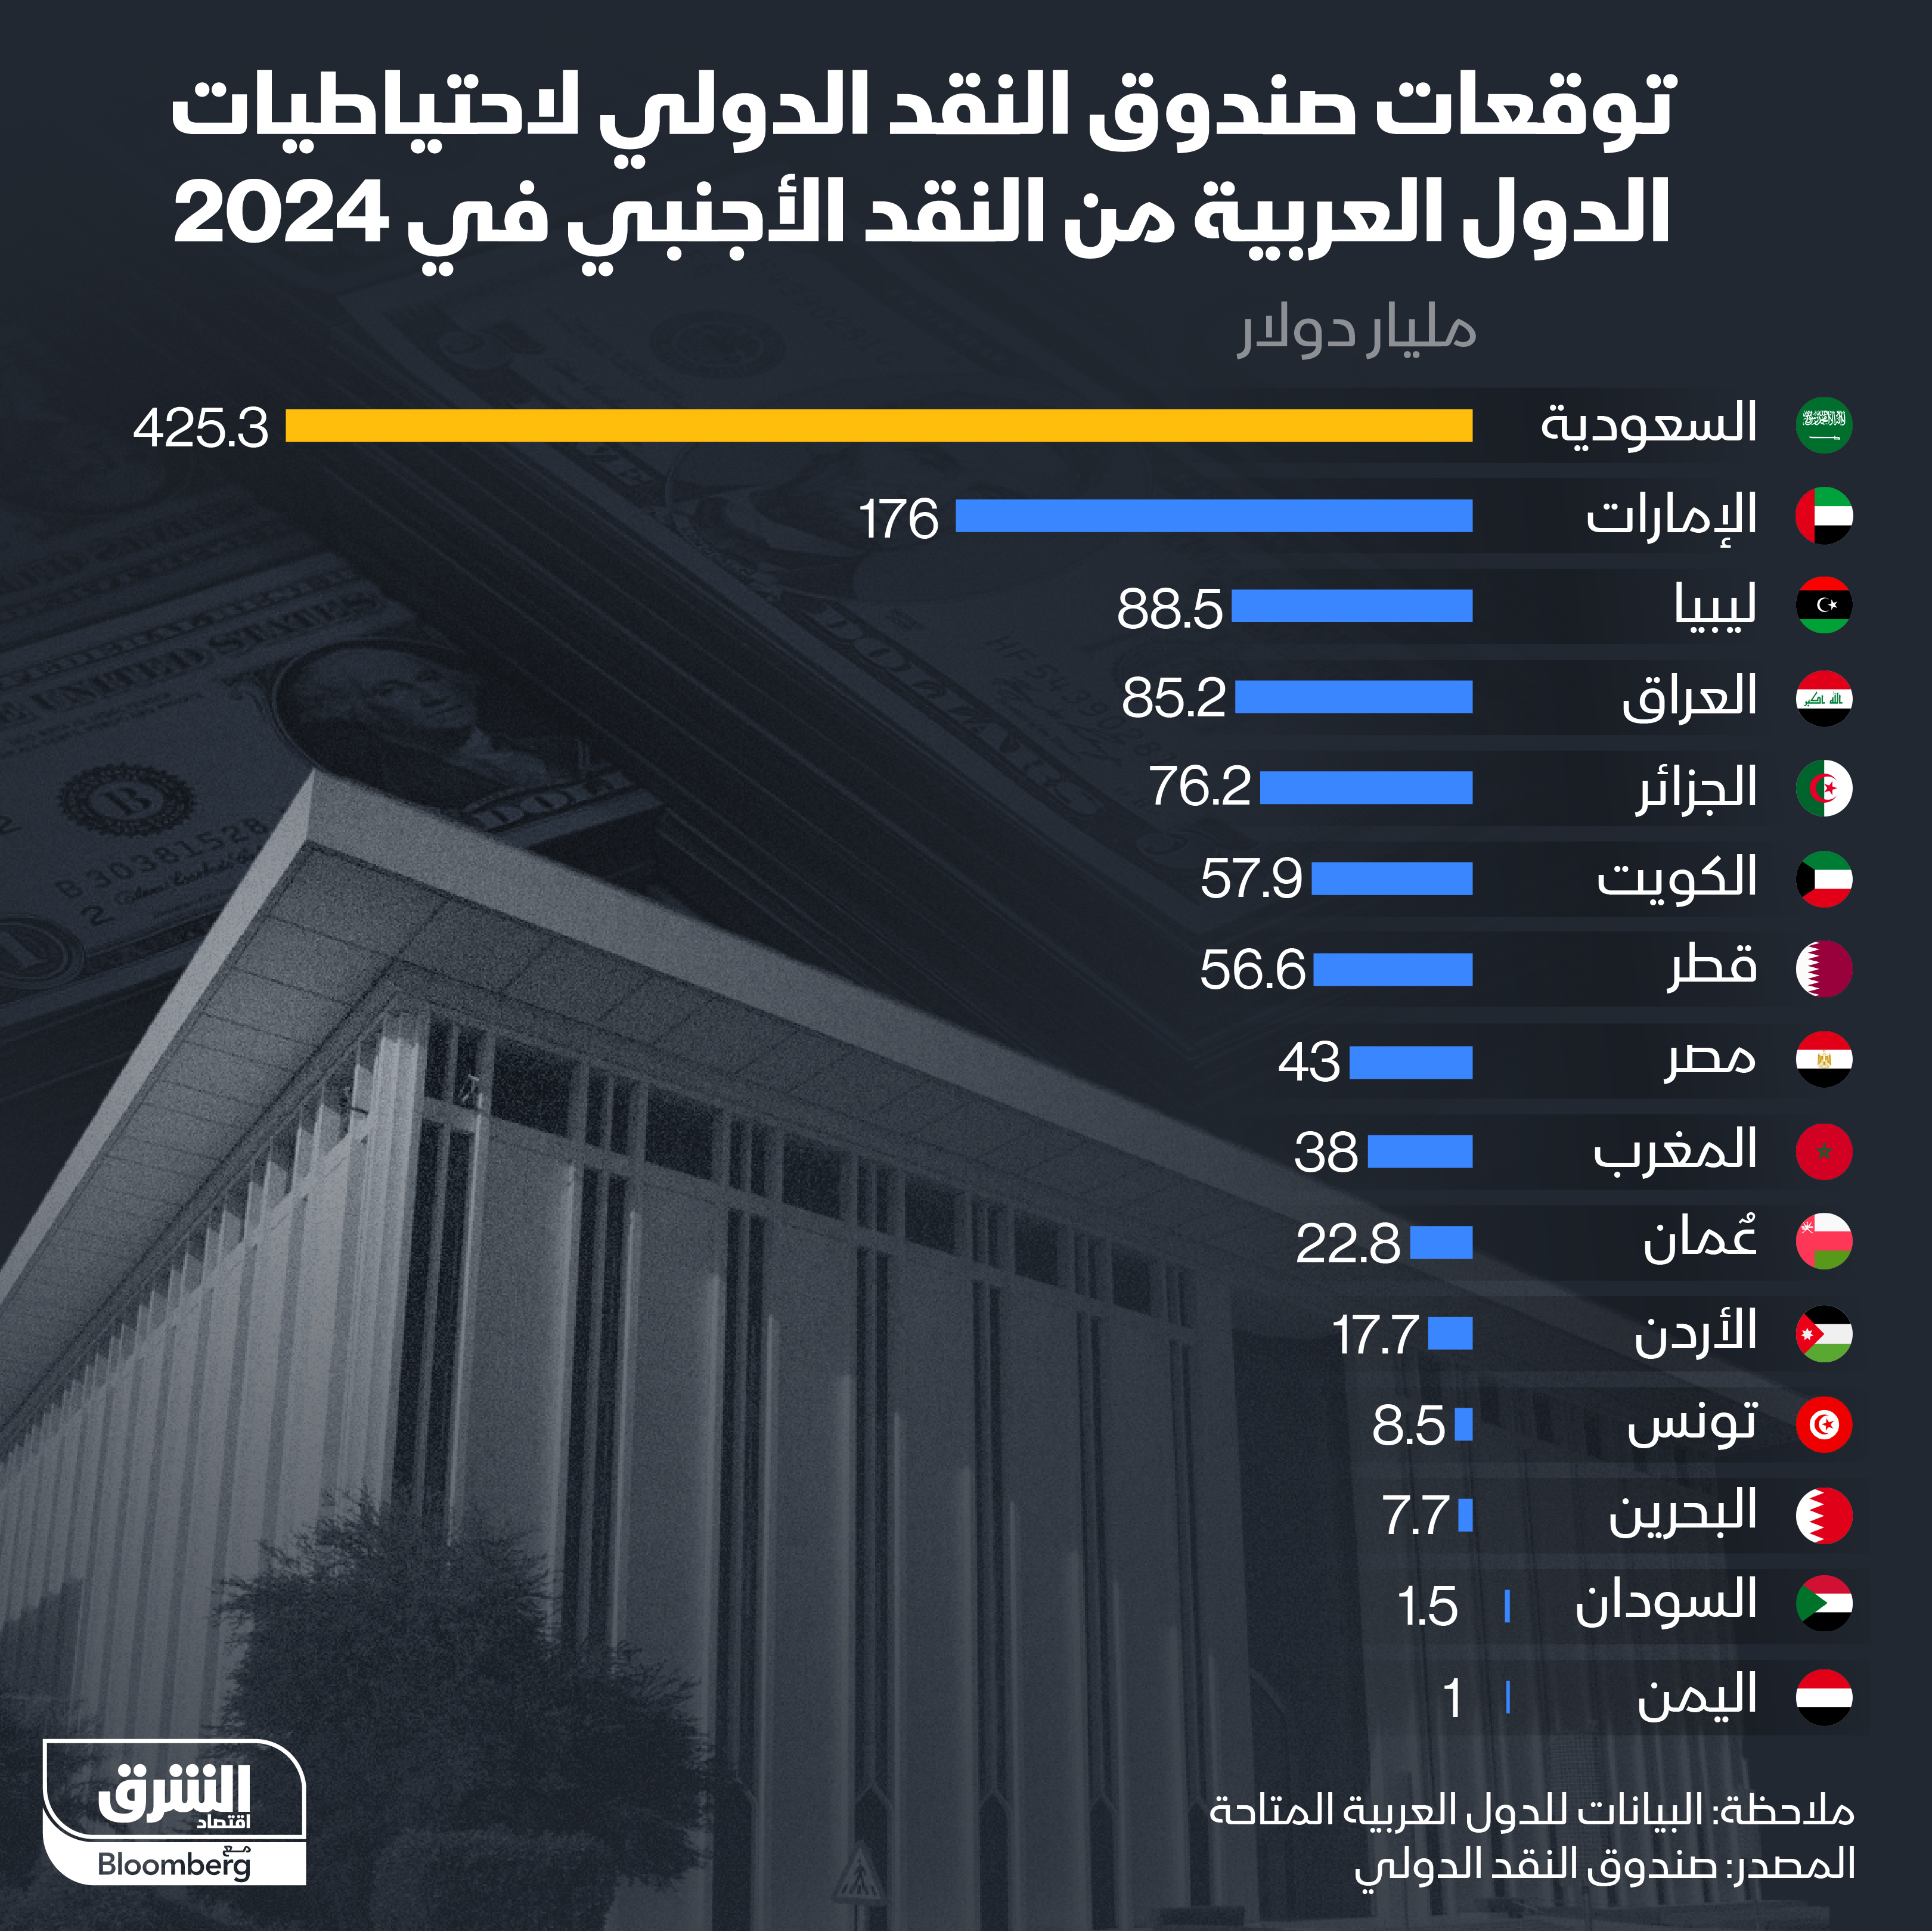 الاحتياطيات النقدية الأجنبية لمصر تقدر بمبلغ 43 مليار دولار في 2024